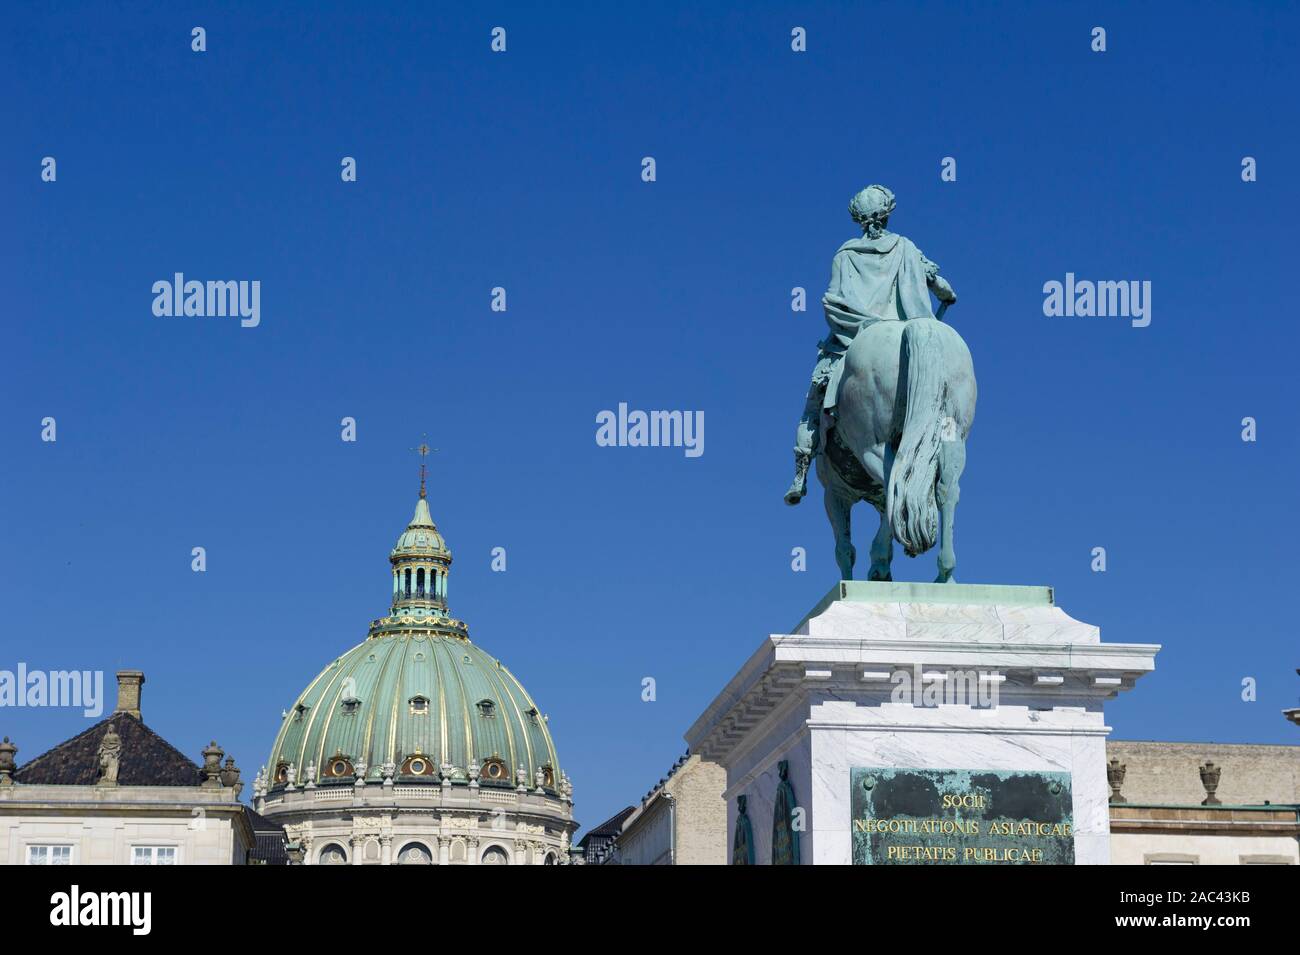 Sculpture of Frederik V on Horseback in Amalienborg Square in Copenhagen, Denmark Stock Photo